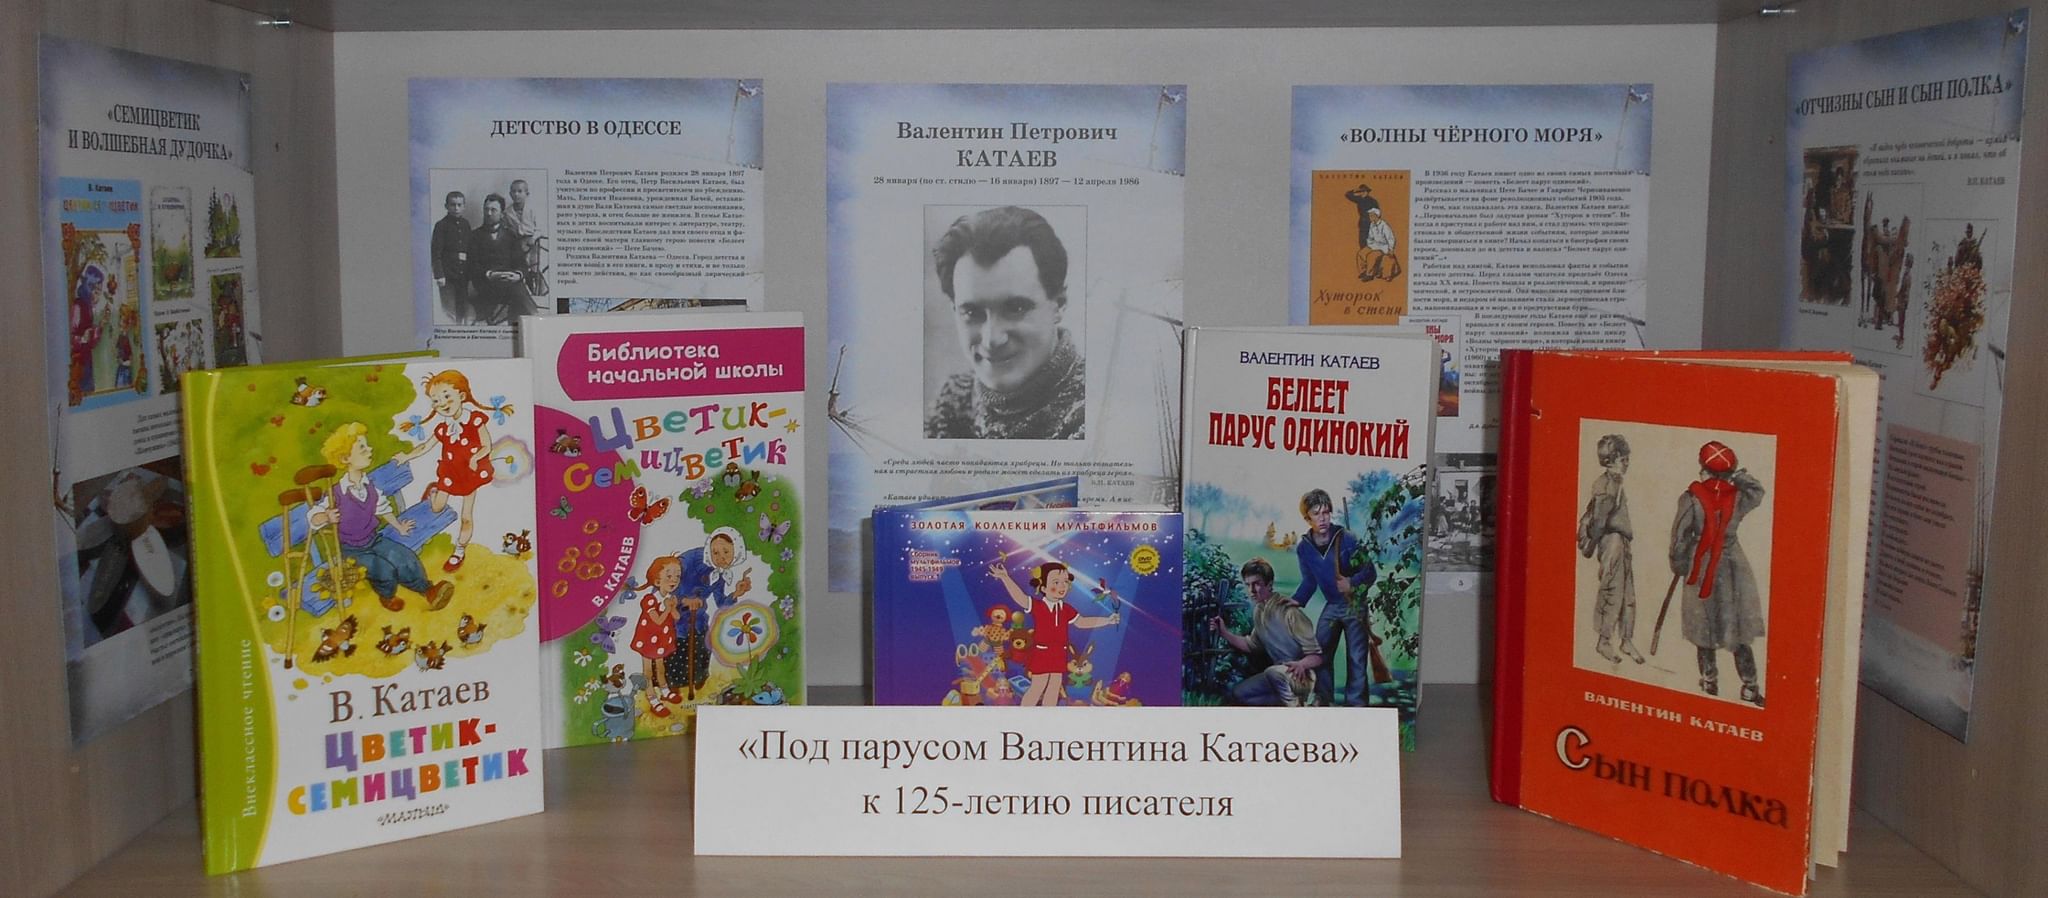 Мероприятия к юбилею Катаева в библиотеке